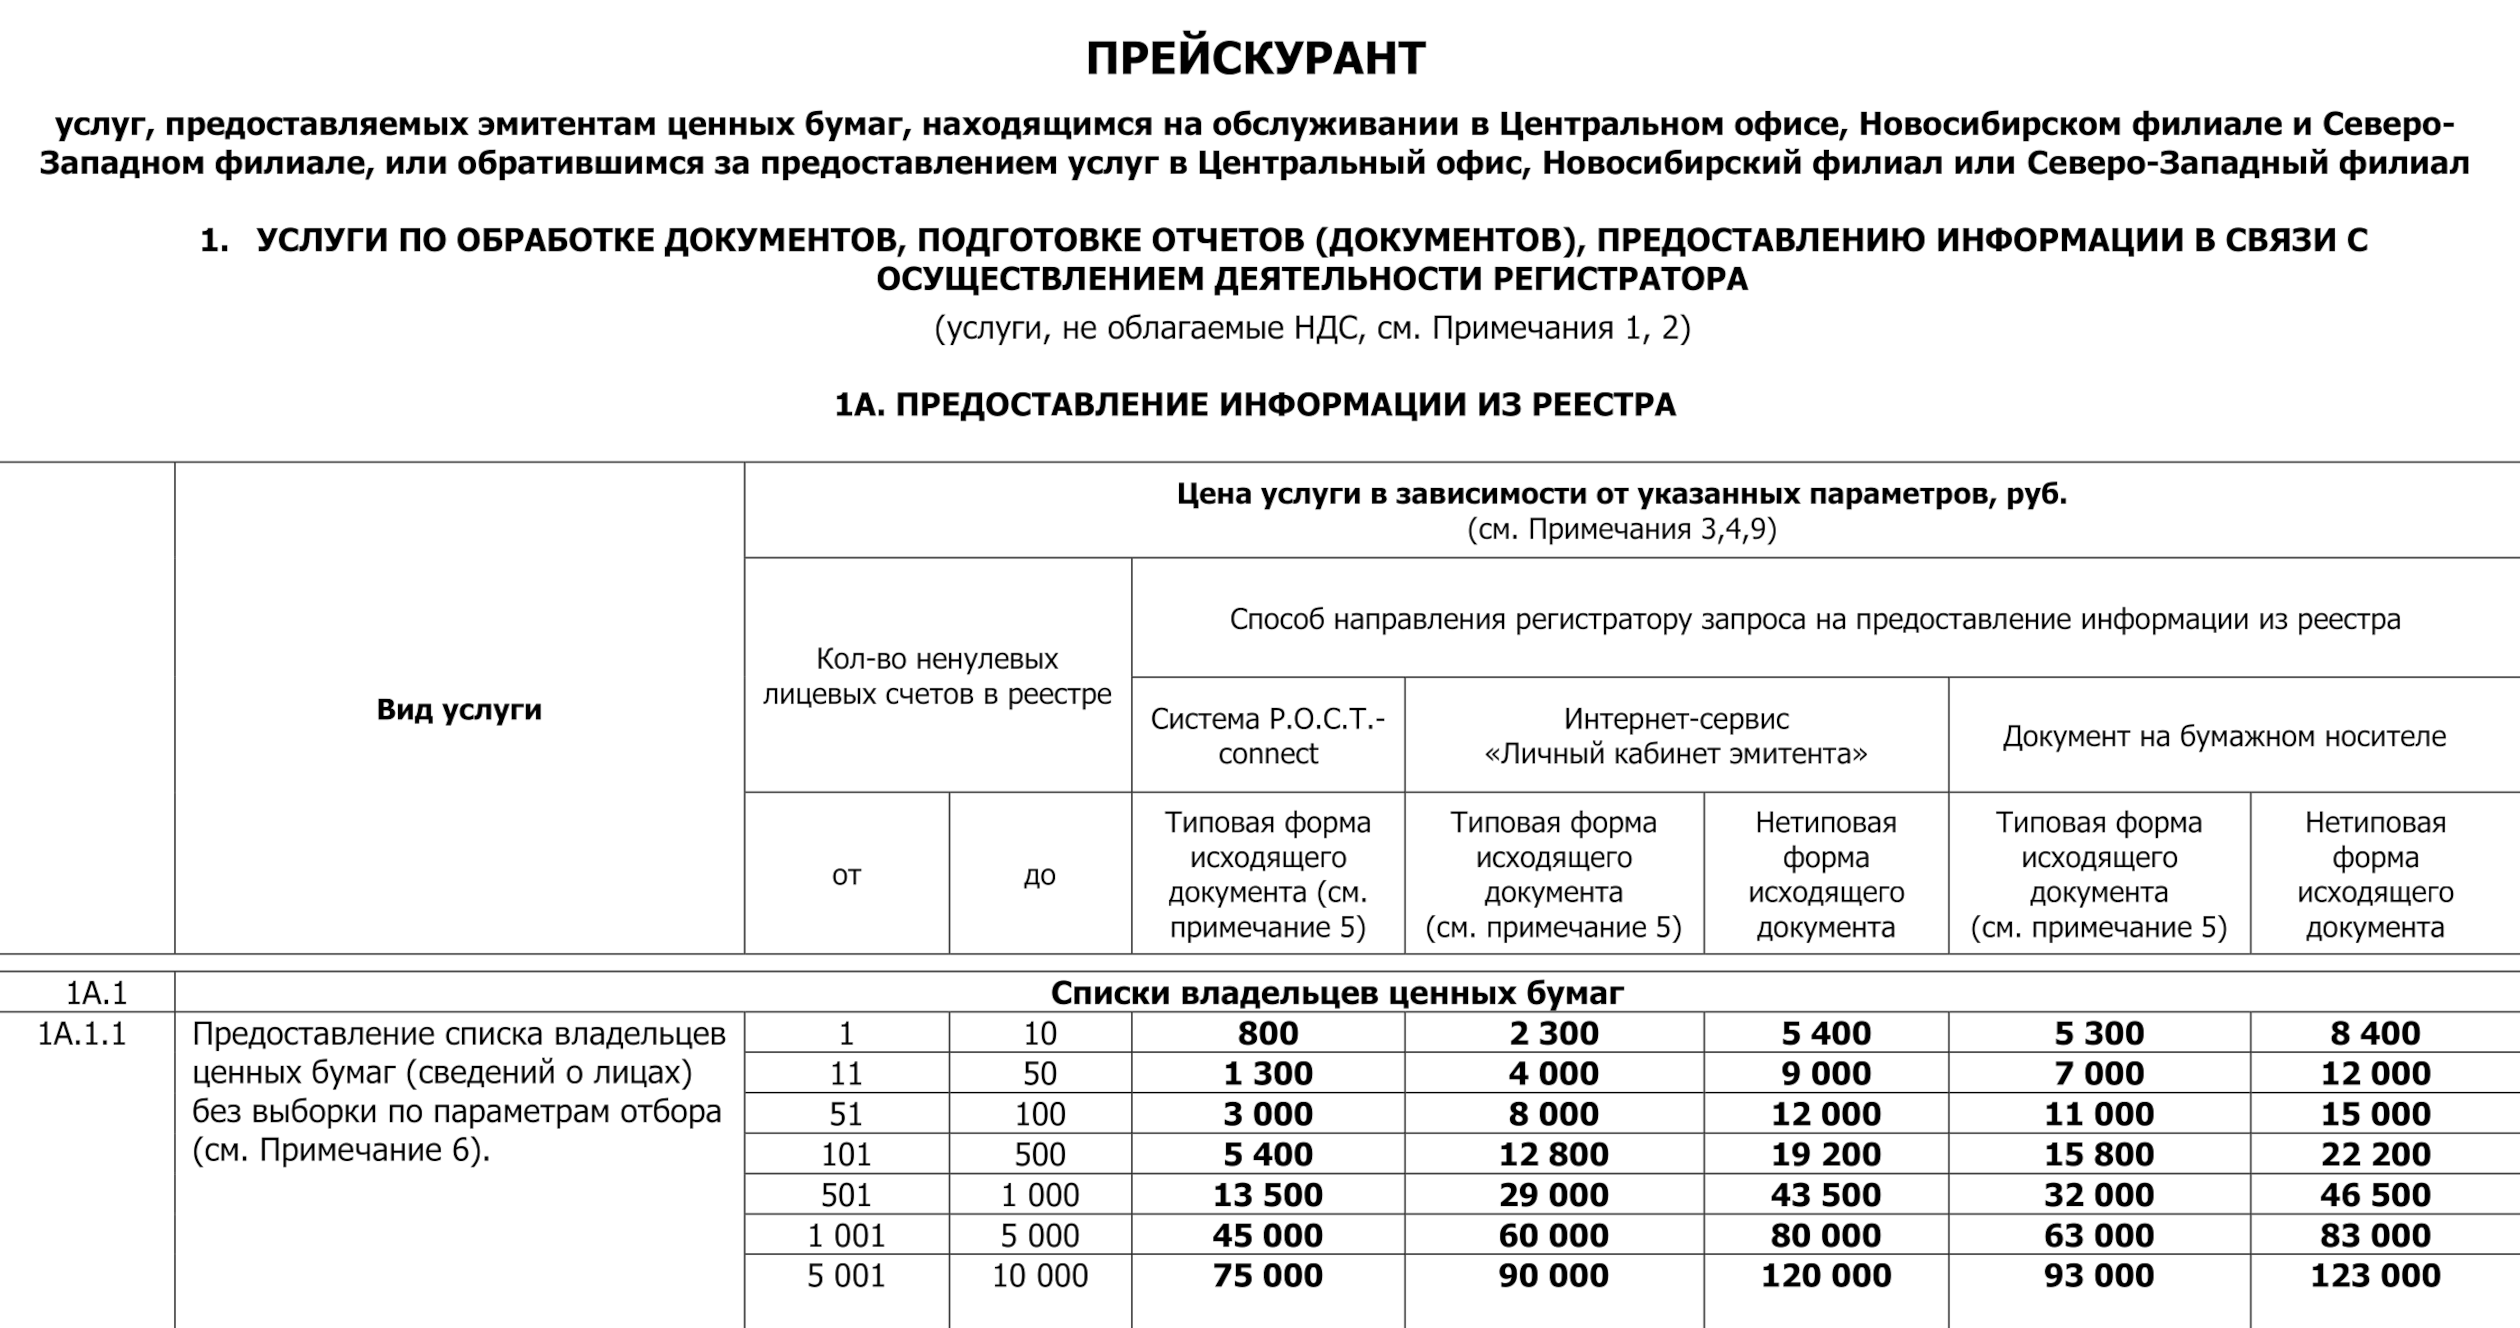 В прейскуранте одного из регистраторов описаны действия, за которые АО нужно заплатить. Источник: rrost.ru